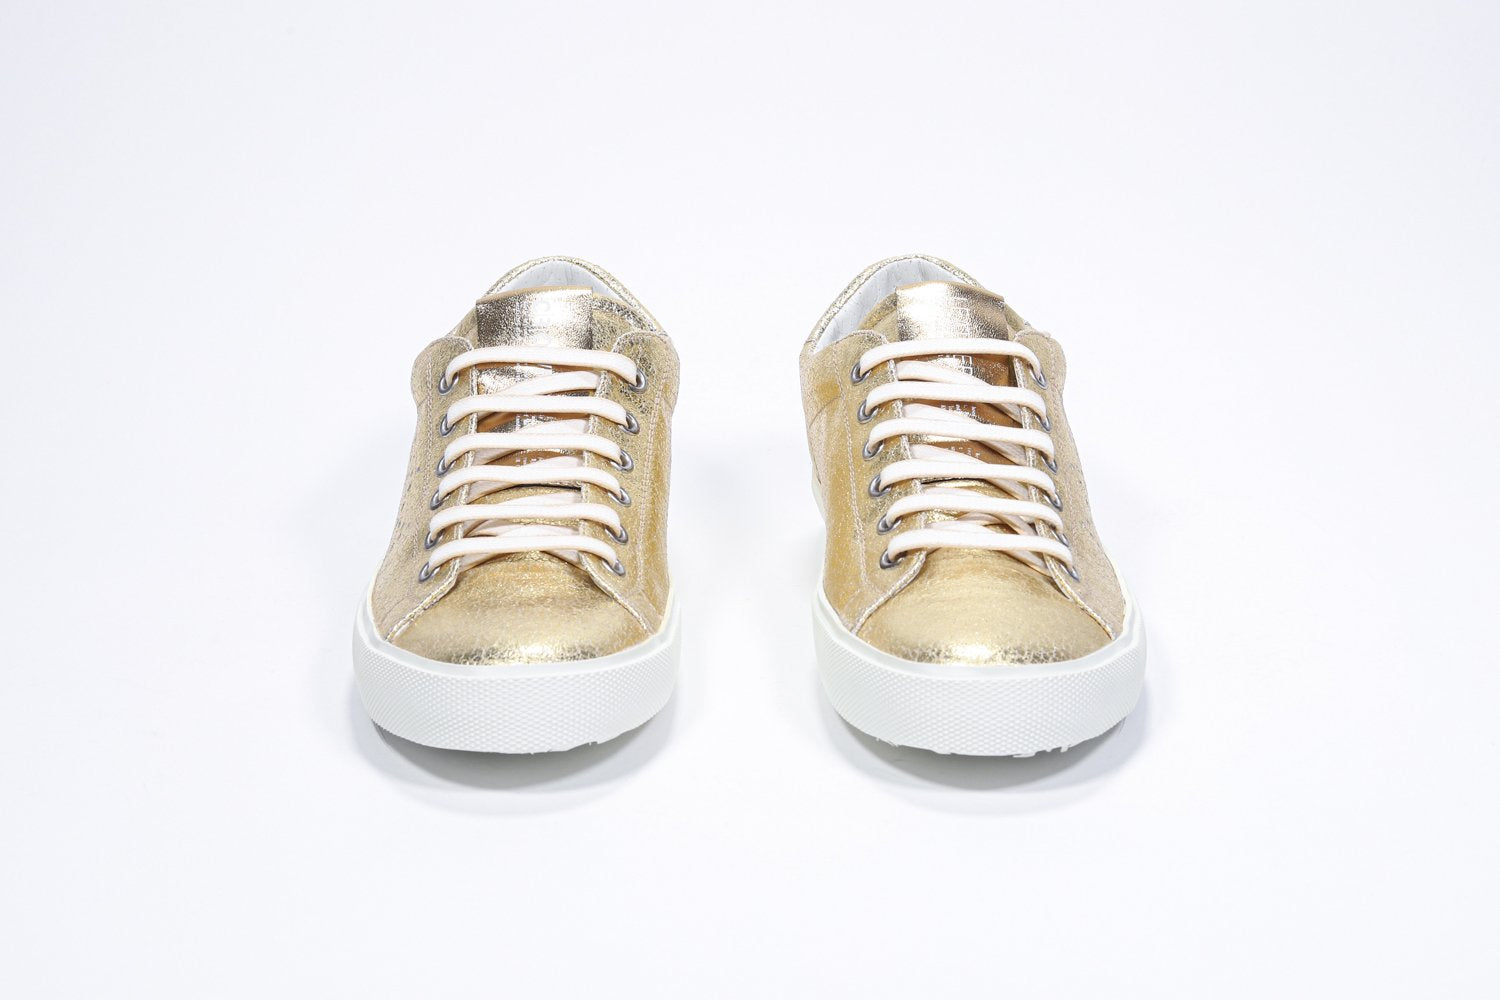 Vorderansicht des goldenen Low Top sneaker mit perforiertem Kronenlogo auf dem Obermaterial. Obermaterial aus Metallic-Leder und weiße Gummisohle.